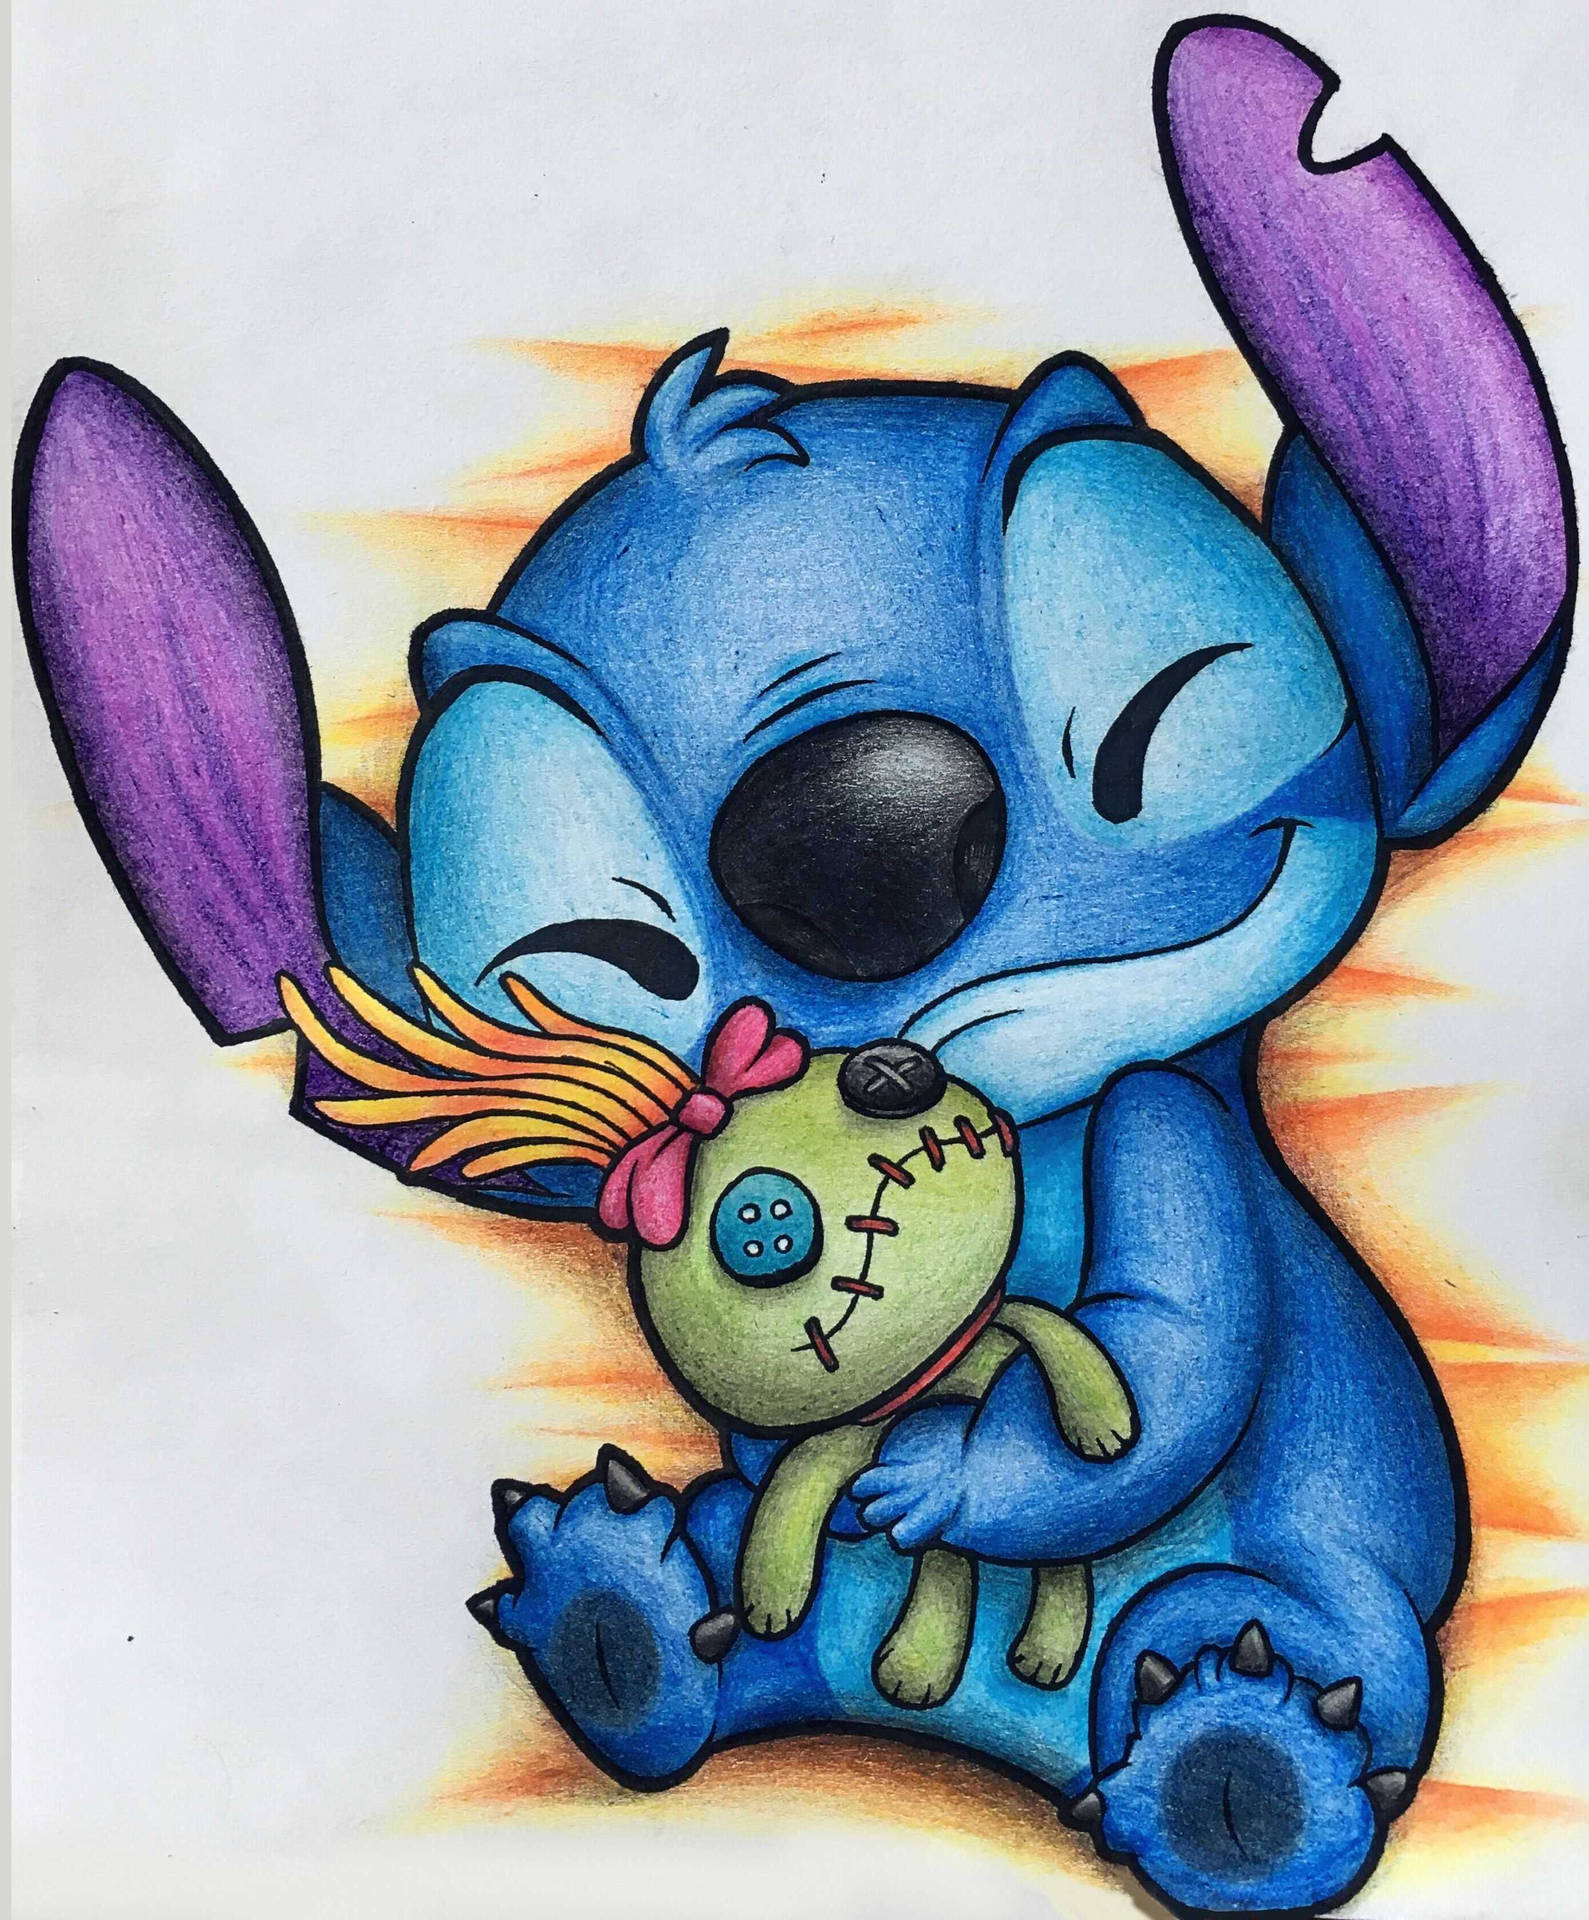 Download Cute Stitch Hugs Scrump Wallpaper